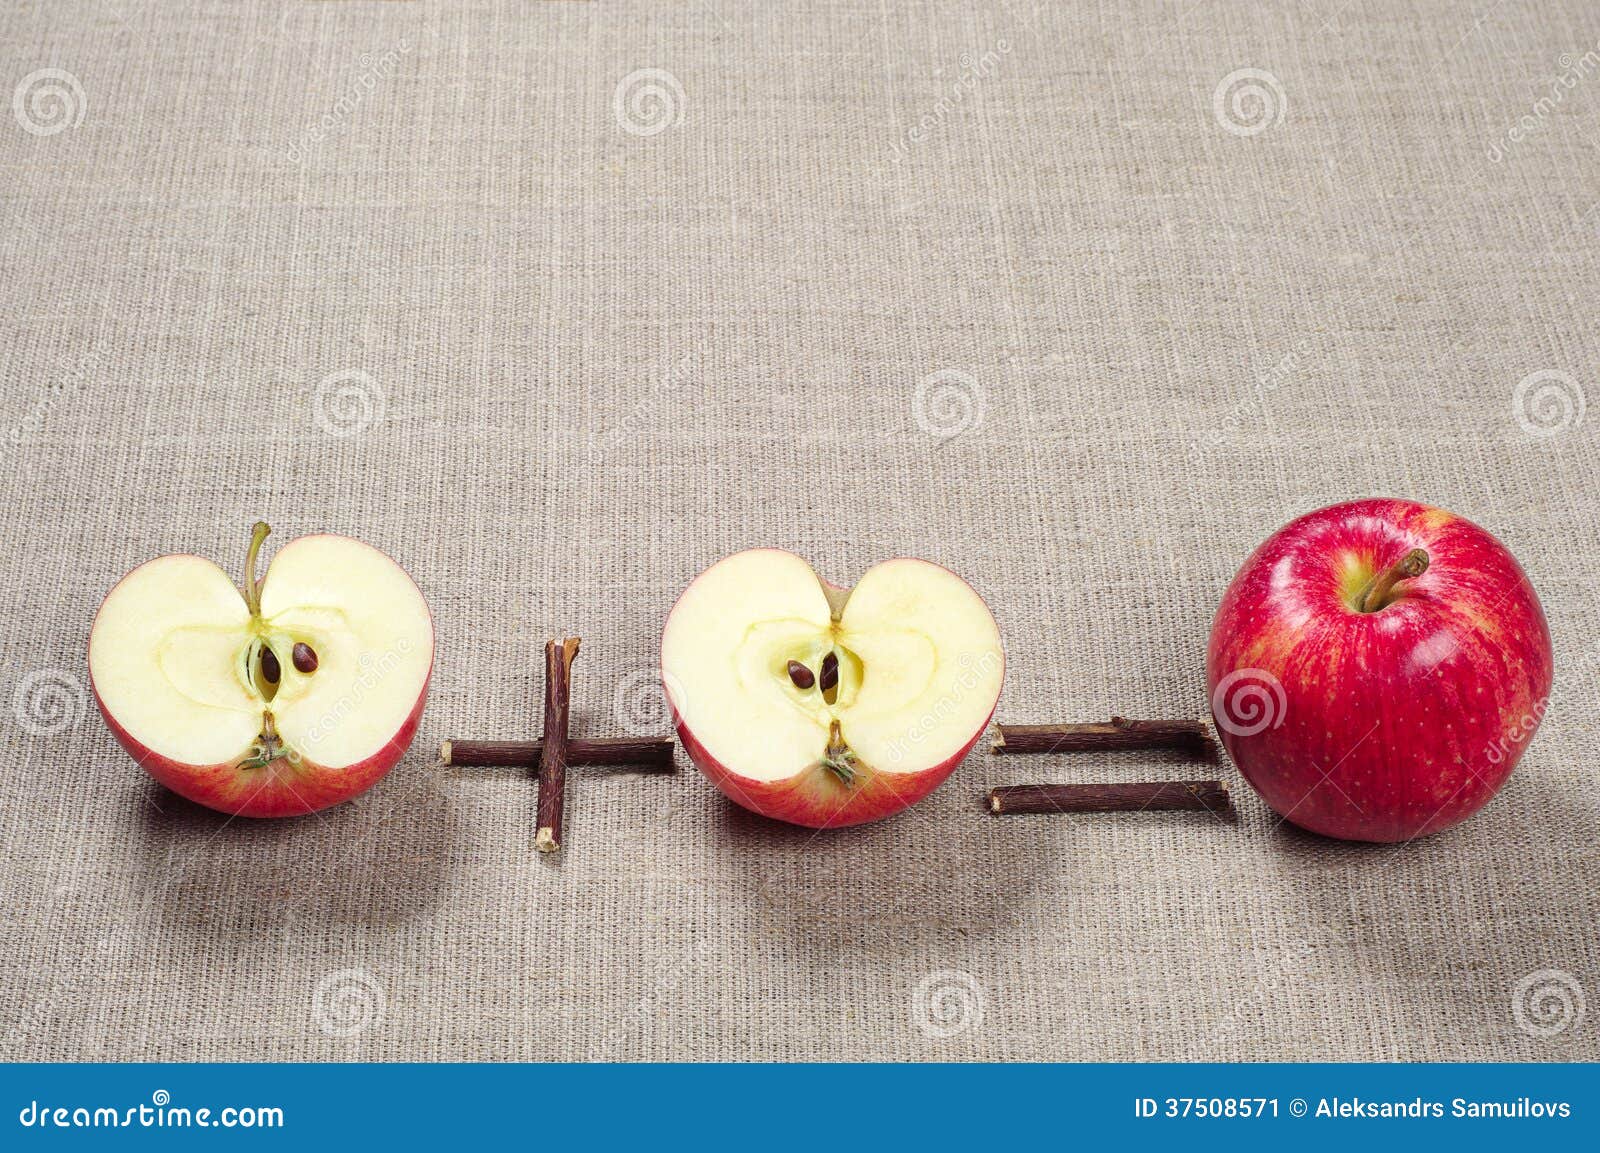 Половинка есть у яблока. Две половинки яблока. Половинка яблока. Яблоко разрезанное на две части. Яблоко пополам.